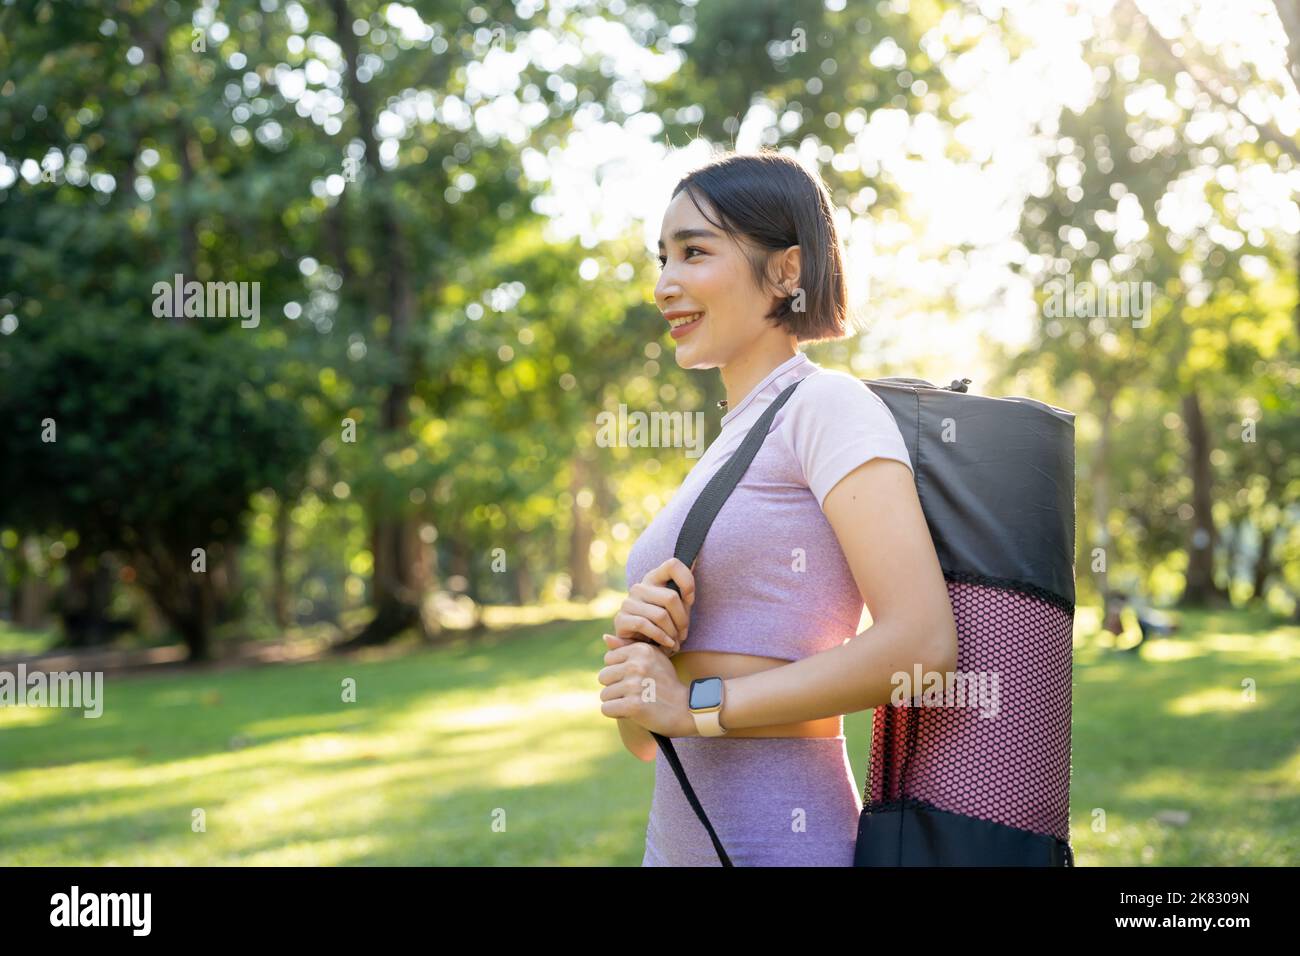 Lächelnde Fitness-Frau, die im Gartenpark steht und eine Yogamatte trägt. Stockfoto